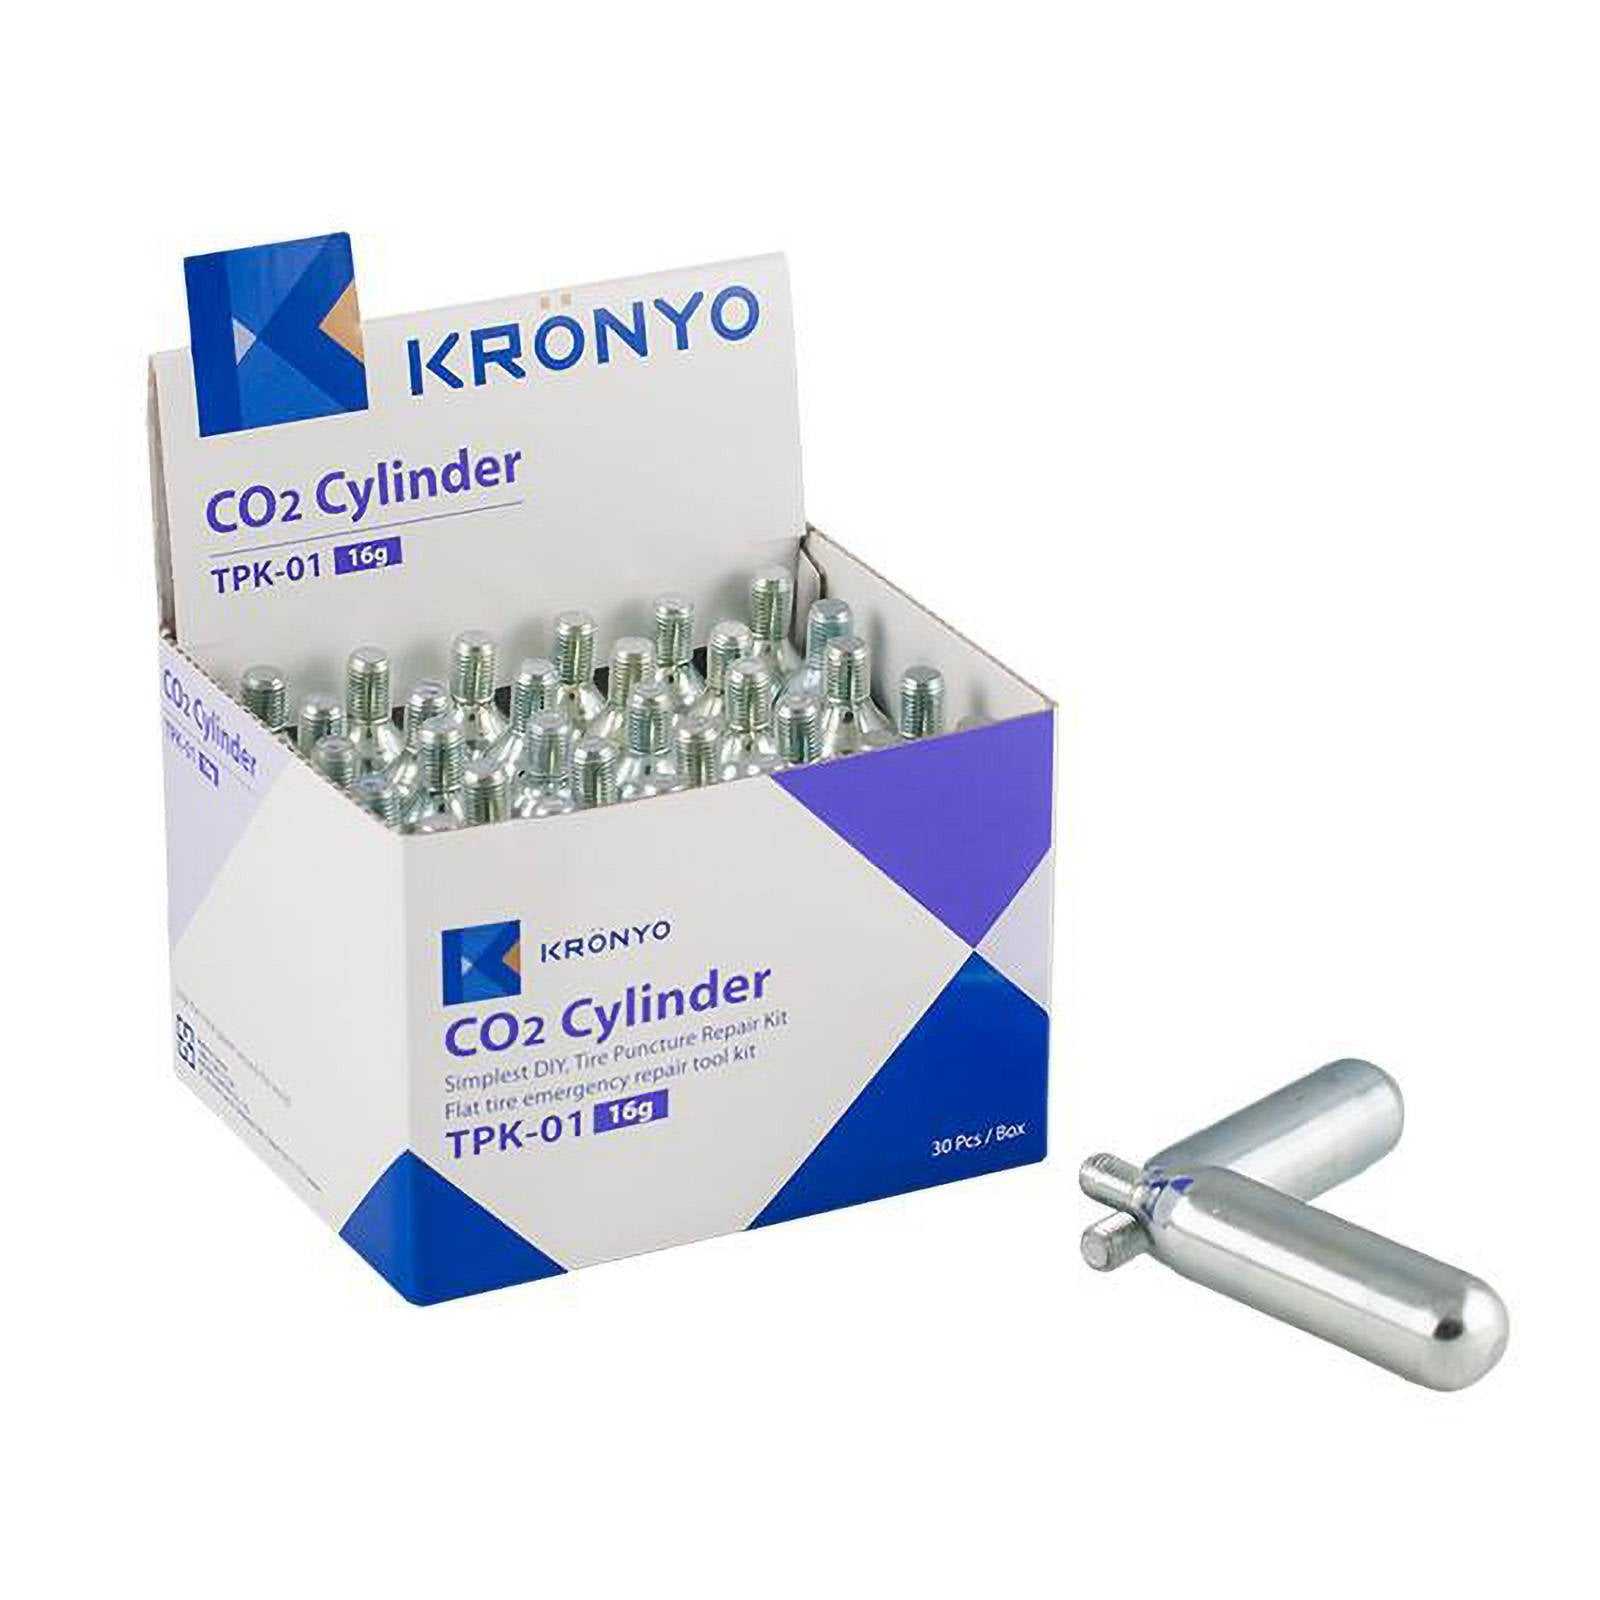 Kronyo, KRONYO Co2 CYLINDERS 16g / 30PCS - BOX